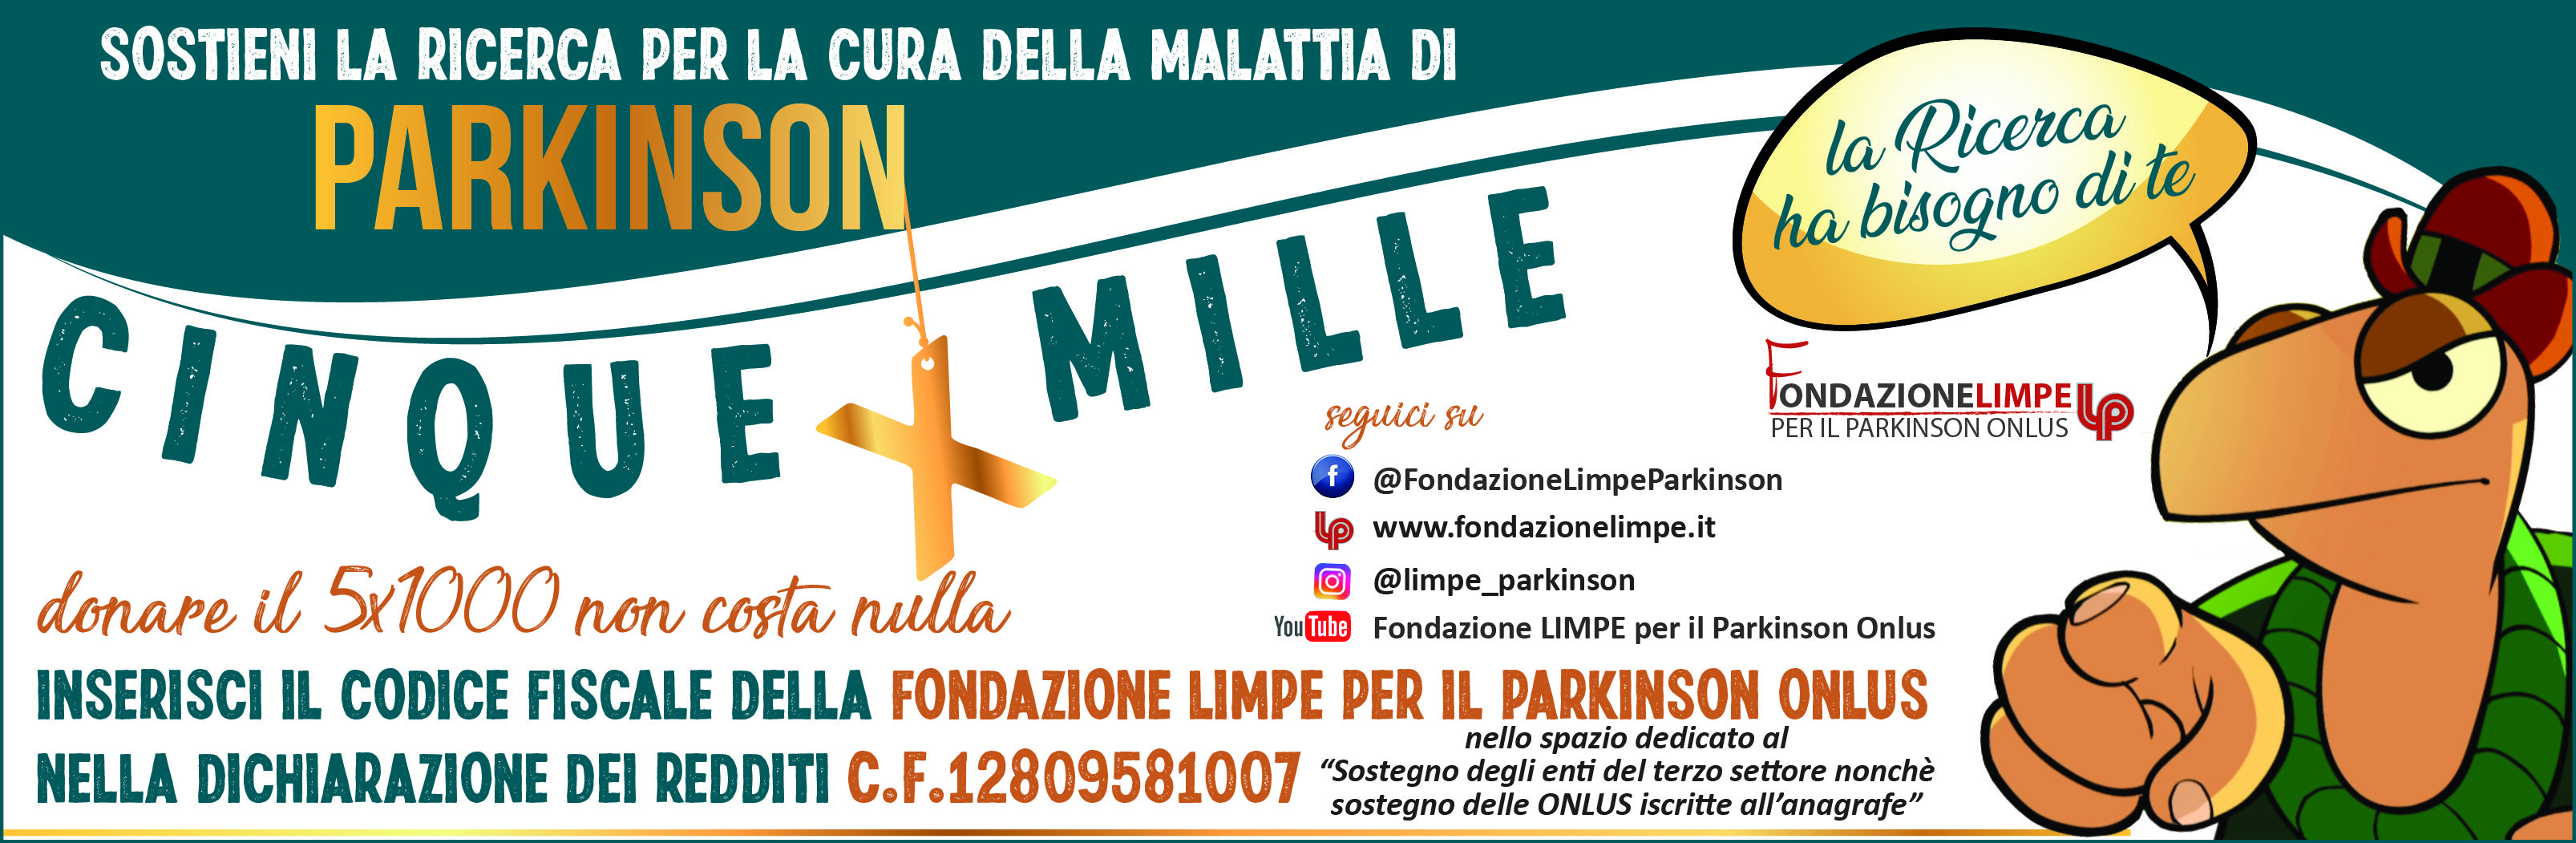 5XMILLE Fondazione LIMPE per il Parkinson Onlus